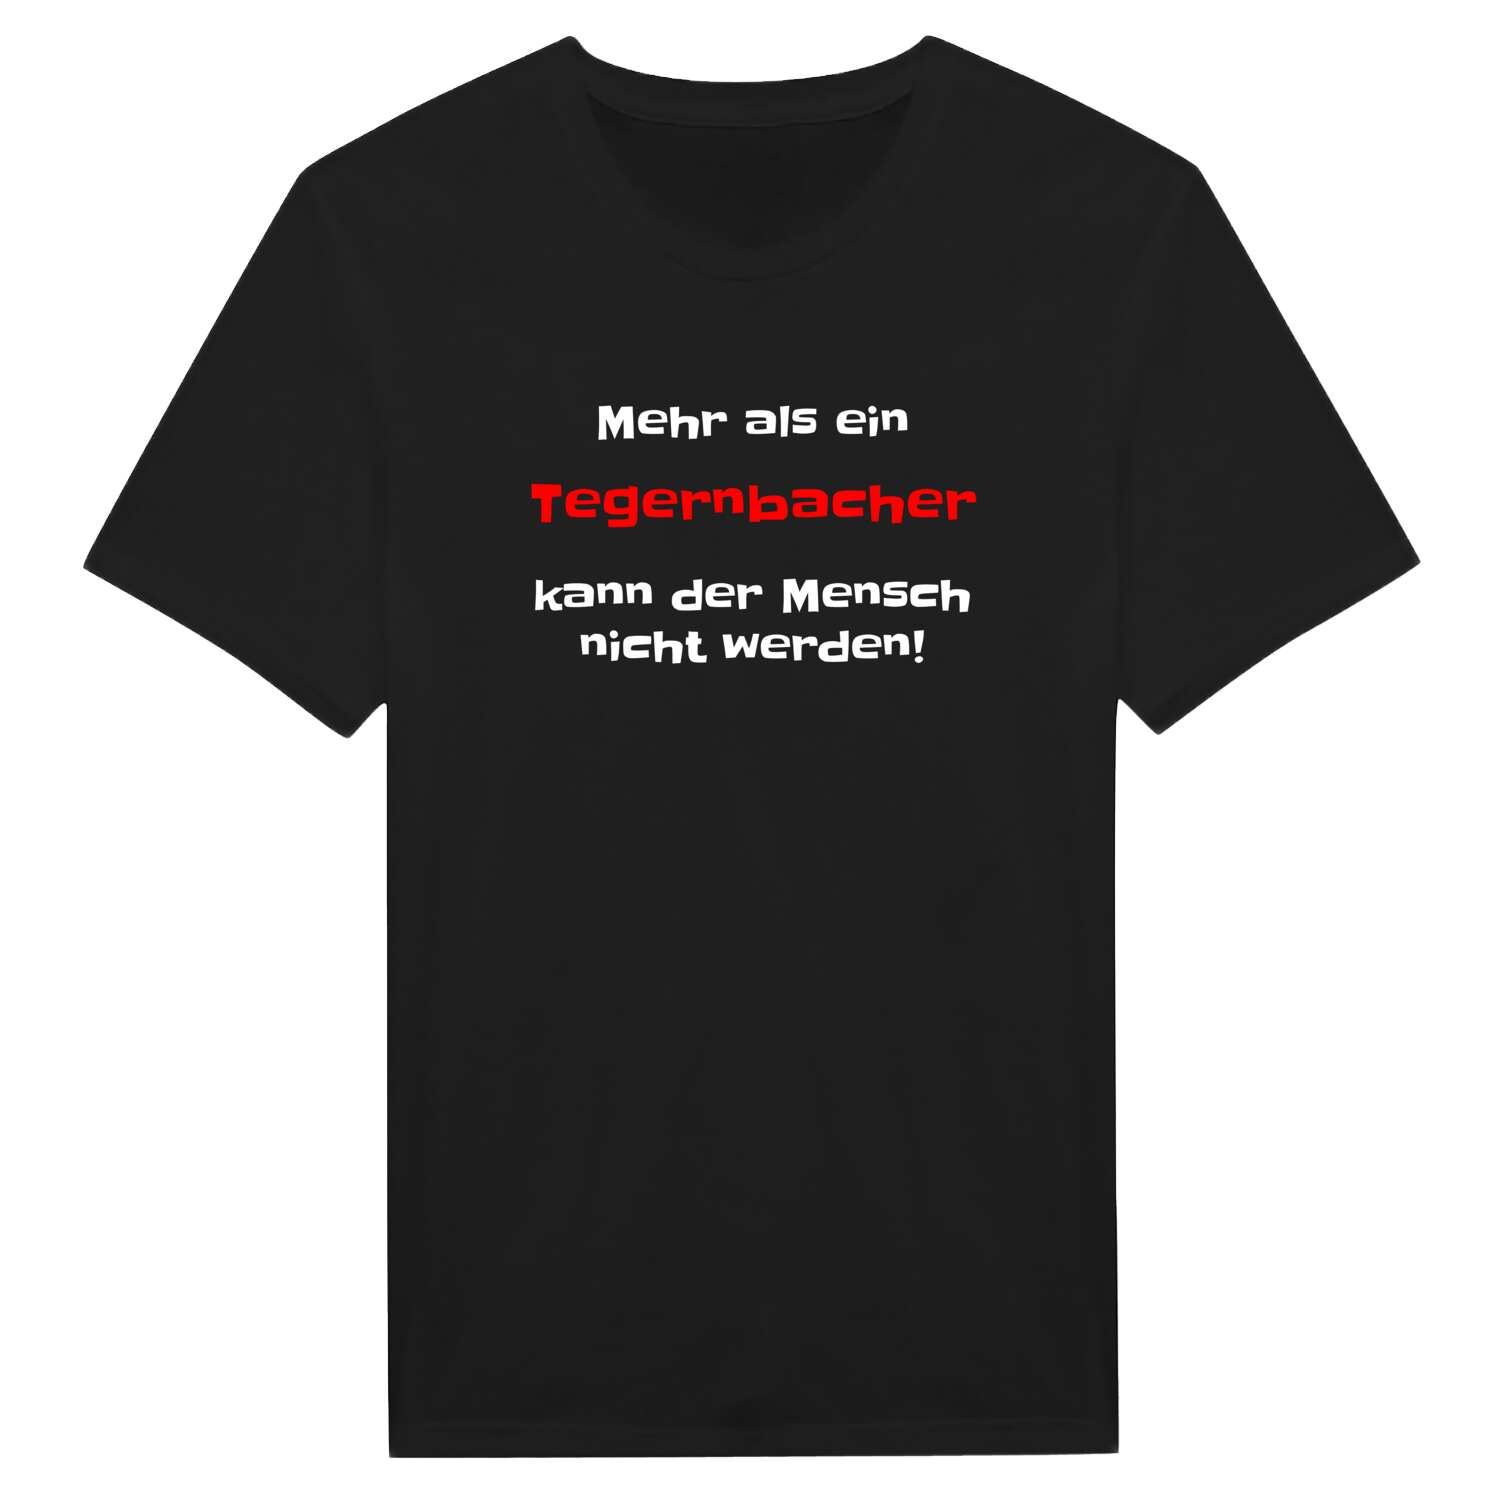 Tegernbach T-Shirt »Mehr als ein«